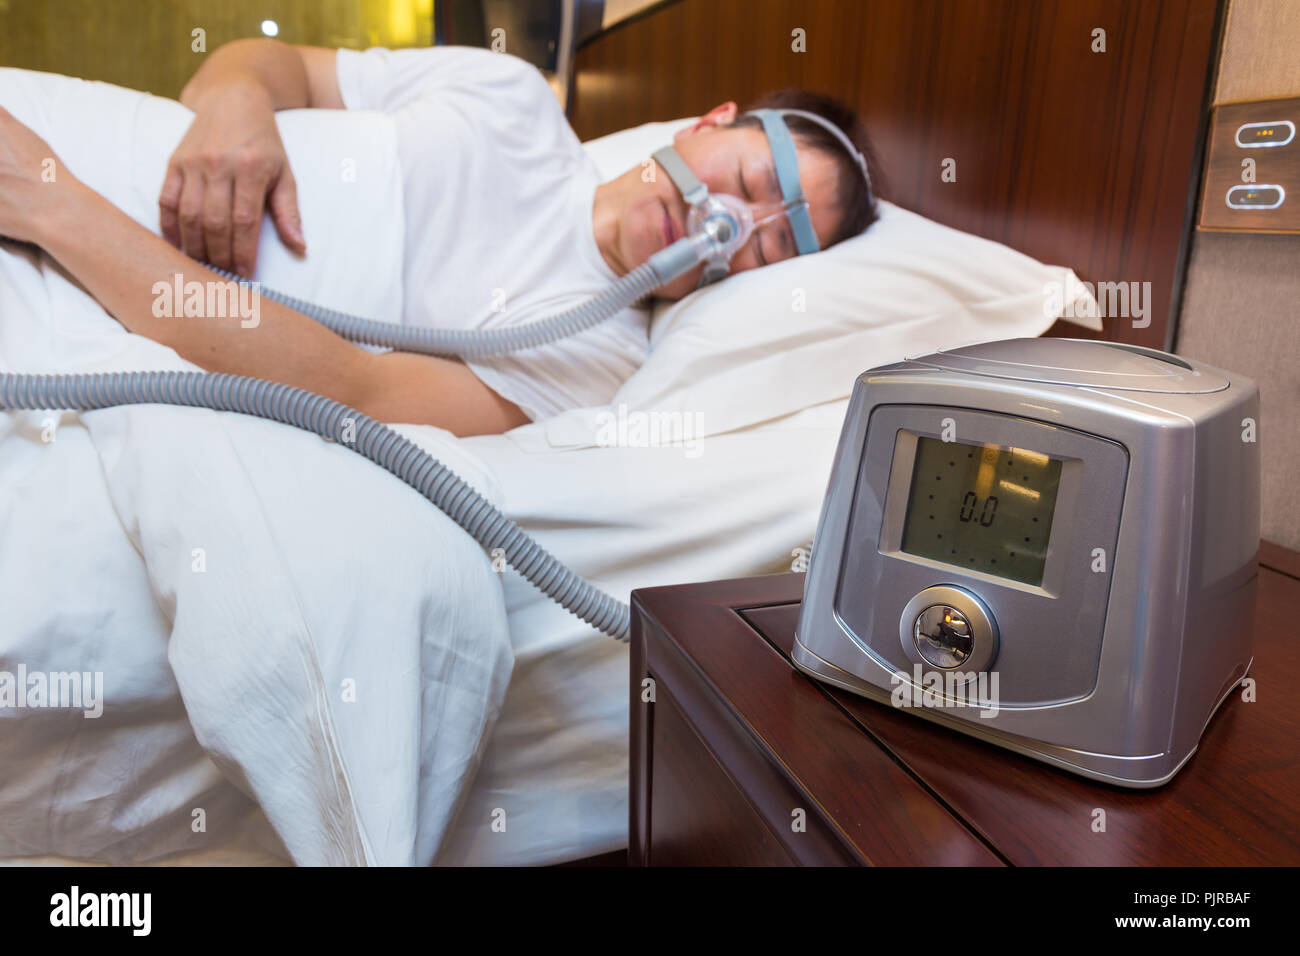 Hombre Con Apnea De Sueño Usando Una Máquina De CPAP Foto de archivo -  Imagen de lifestyle, aire: 44177652